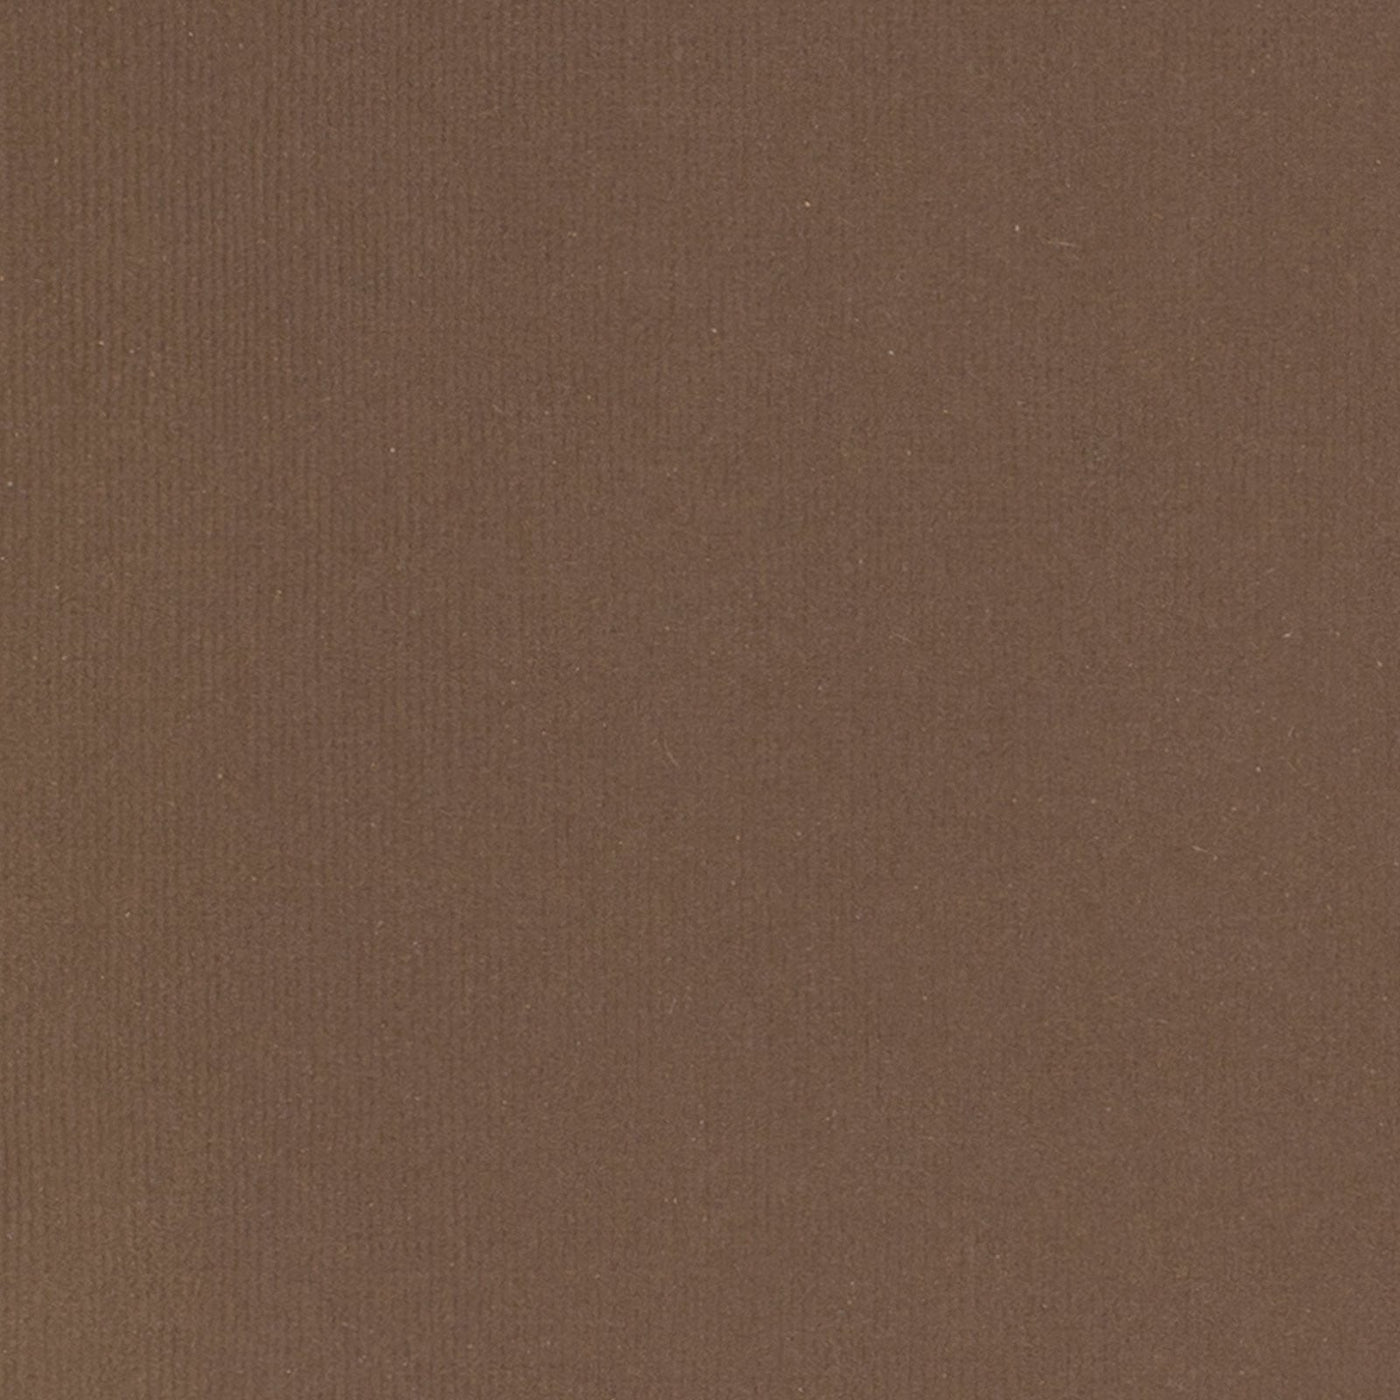 Chestnut Brown cardstock - 12x12 inch - 80 lb - textured scrapbook paper - American Crafts scrapbook paper